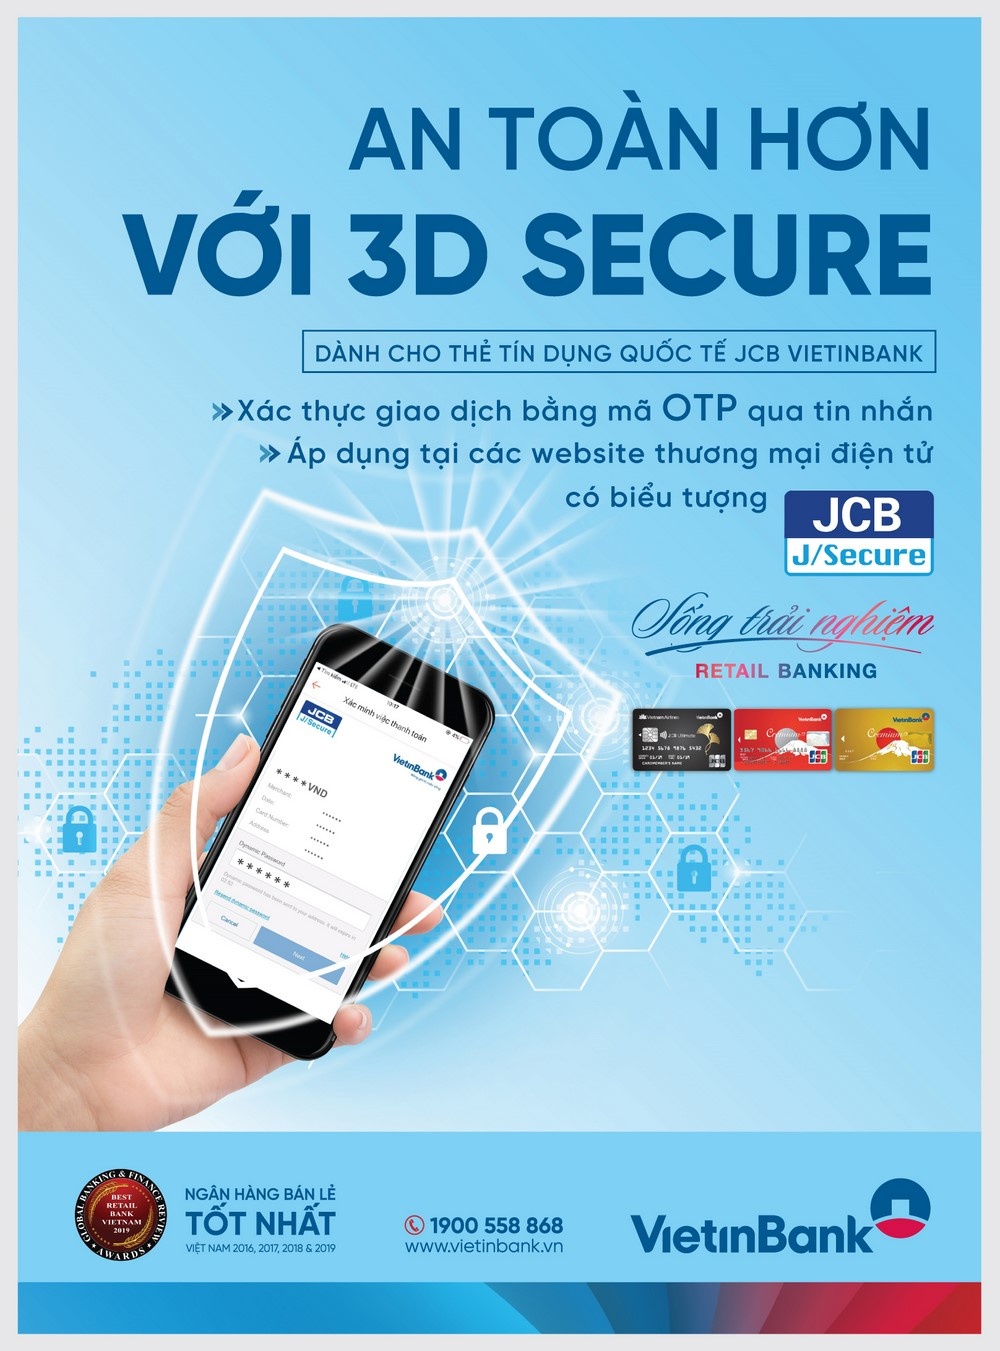 VietinBank triển khai tính năng bảo mật 3D Secure cho thẻ tín dụng quốc tế JCB